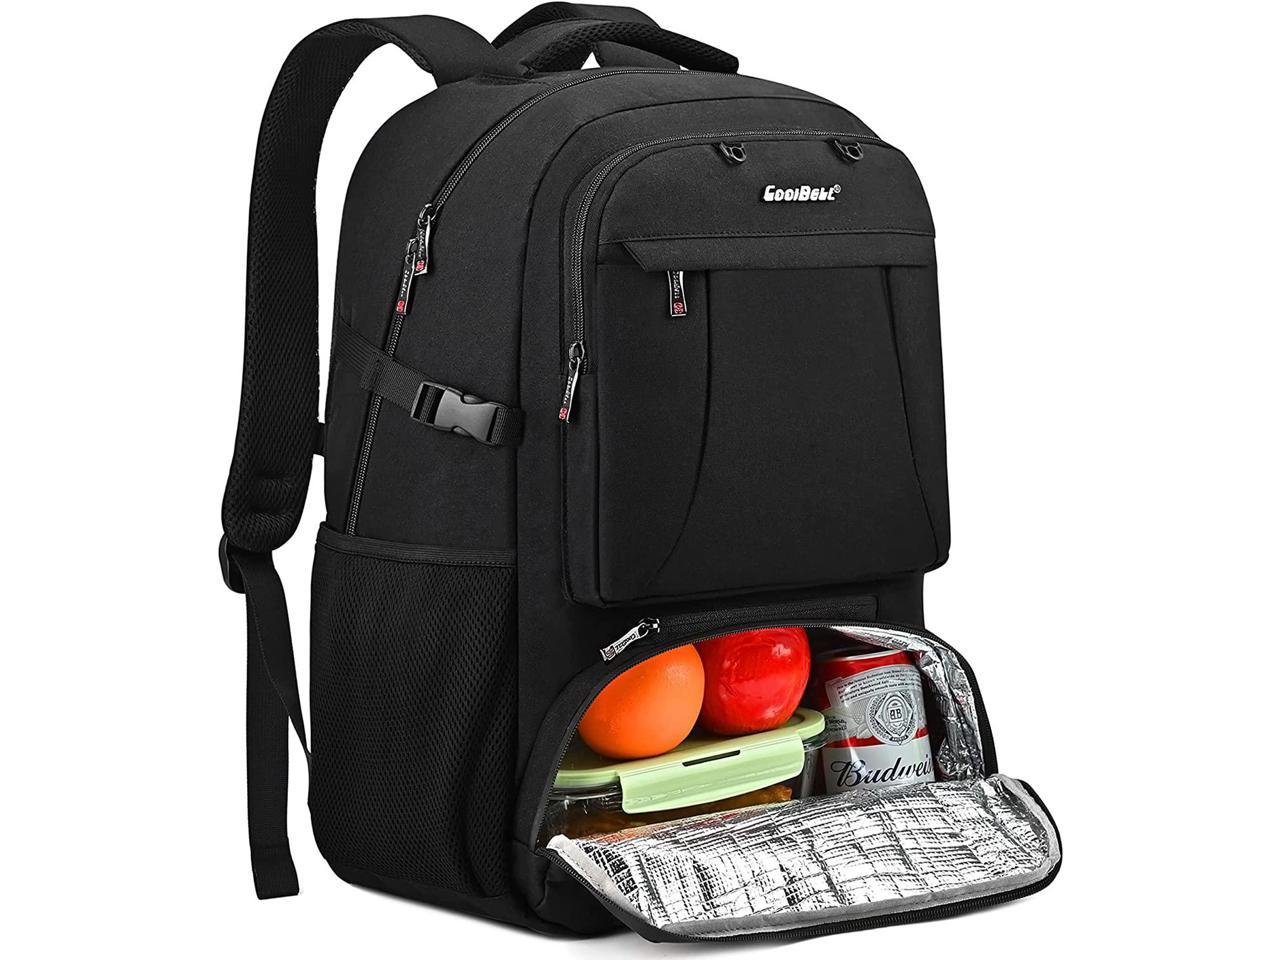 Laptop Backpacks for Men BAGSMART Backpacks 15.6’’ Notebook Work College Travel Back Pack with USB Charging Port Computer Bag Practical Gift for Men Women 